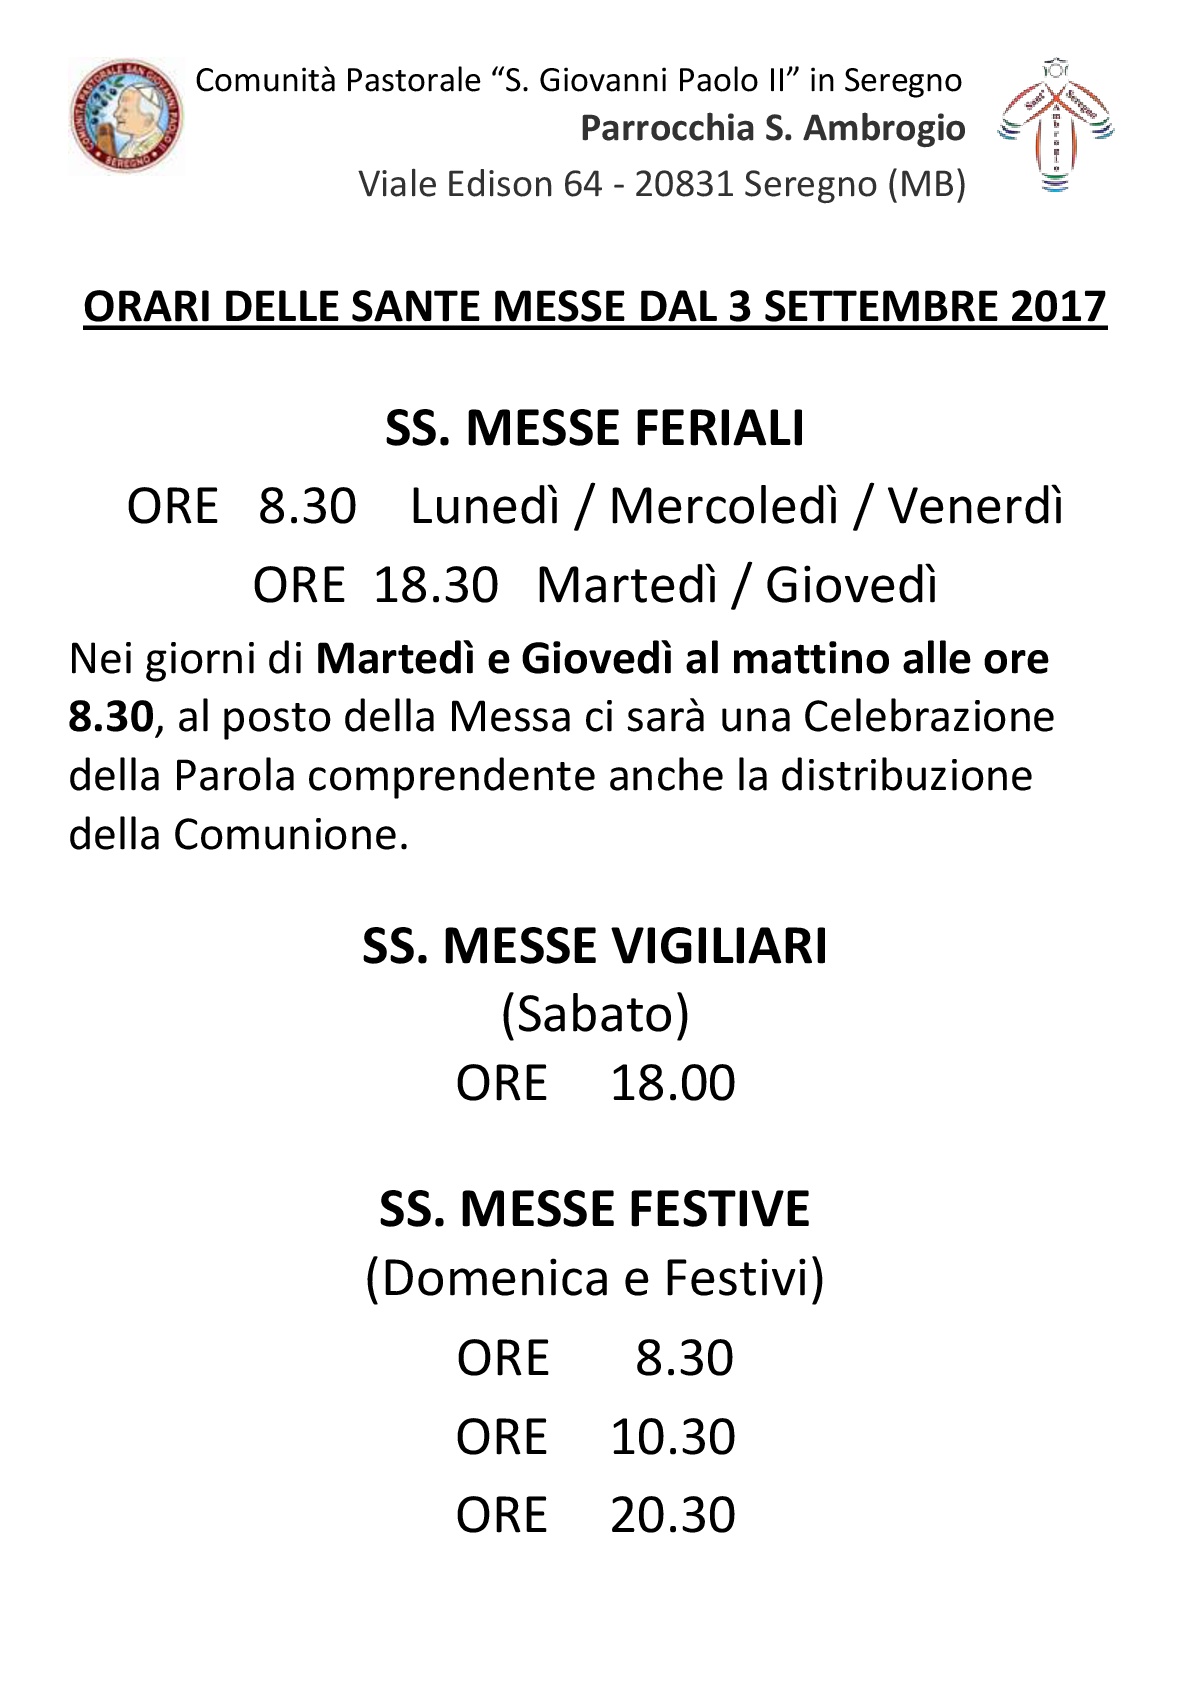  Nuovi orari Ss. Messe dal 3 settembre 2017